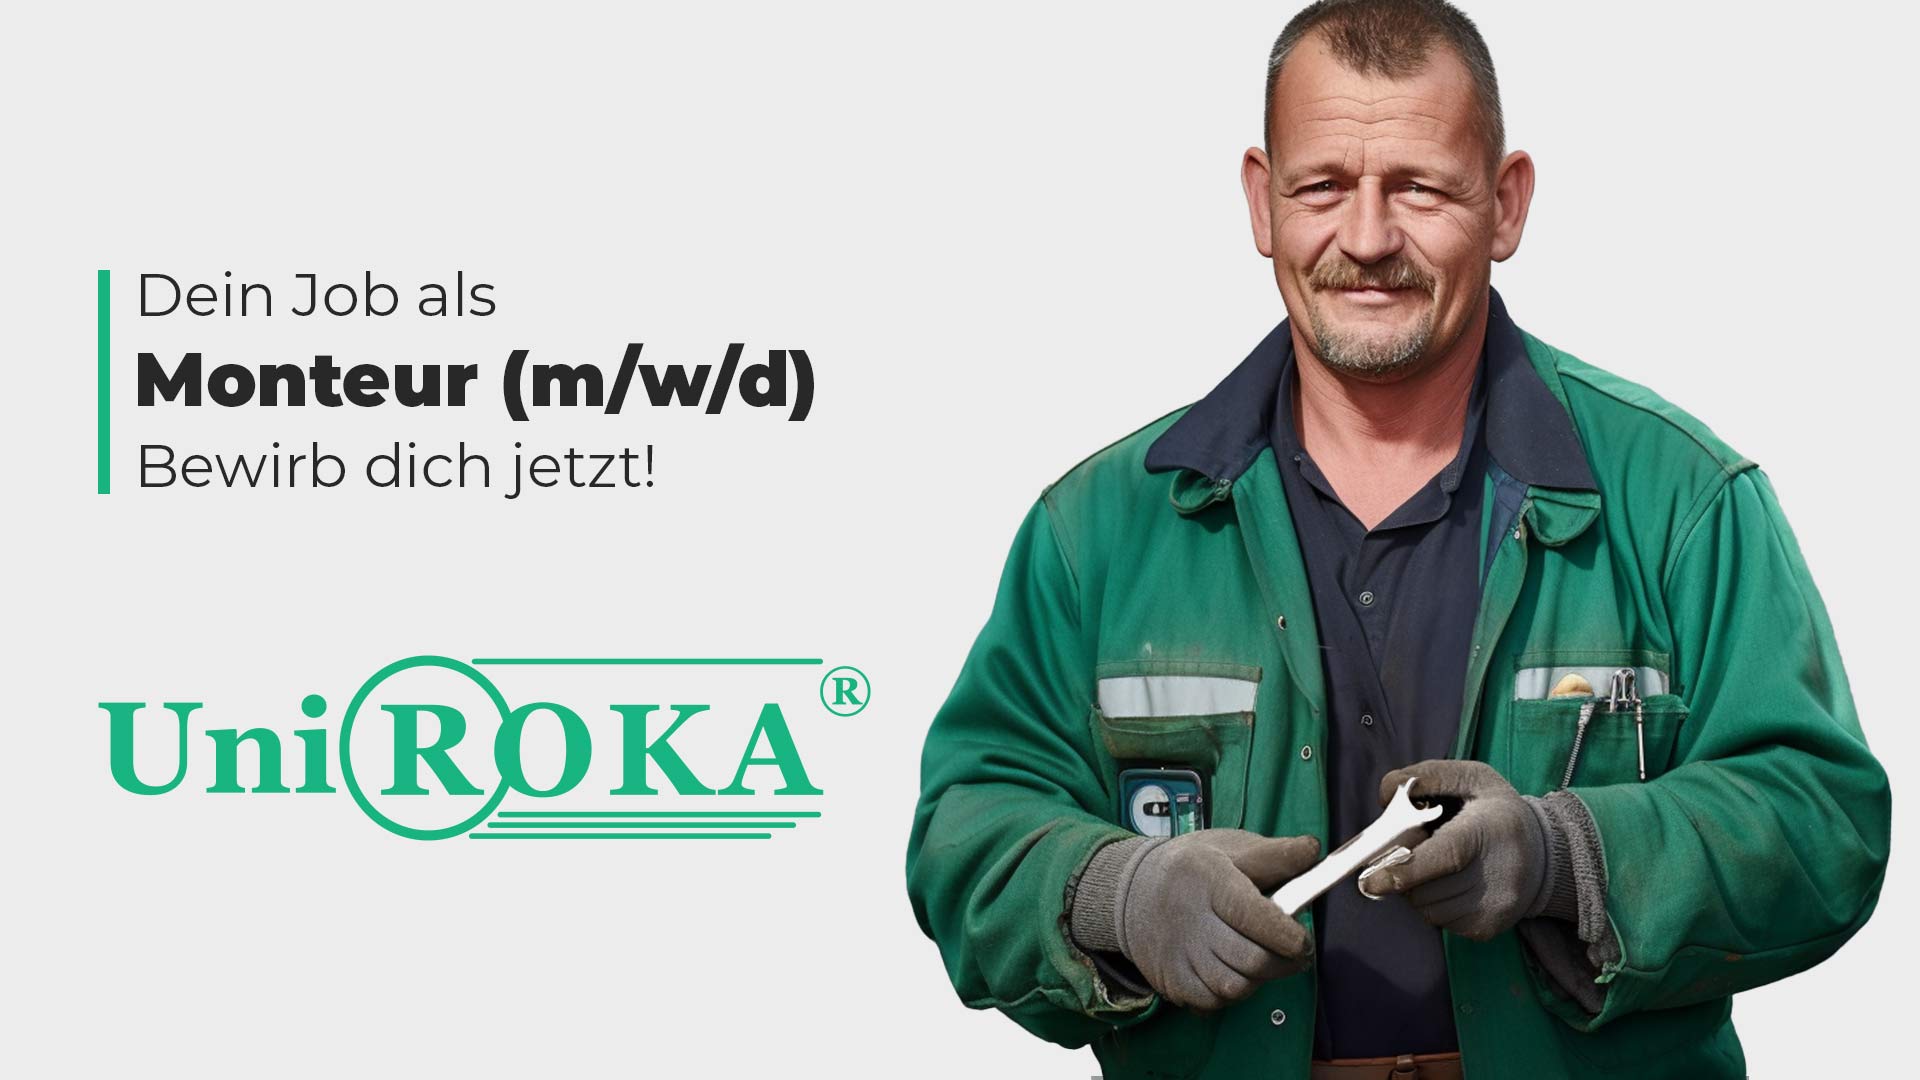 Zu sehen ist ein Handwerker mit grüner Jacke, Stellenanzeige für einen Job als Monteur (m/w/d)